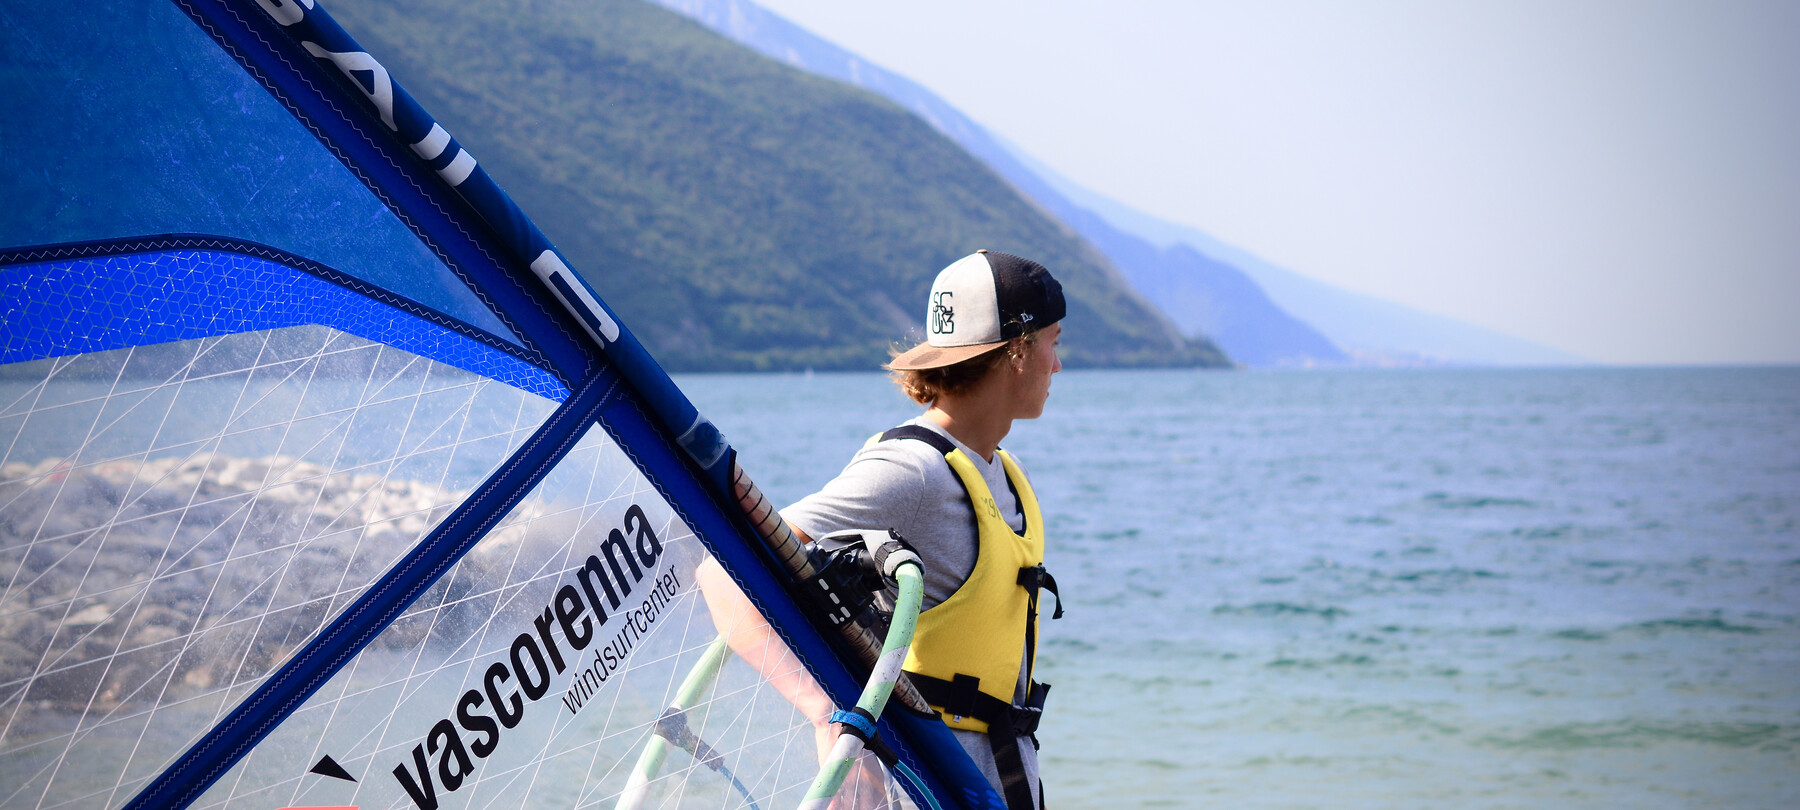 De meren van Trentino: het verhaal van Nicolò en windsurfen op het Gardameer